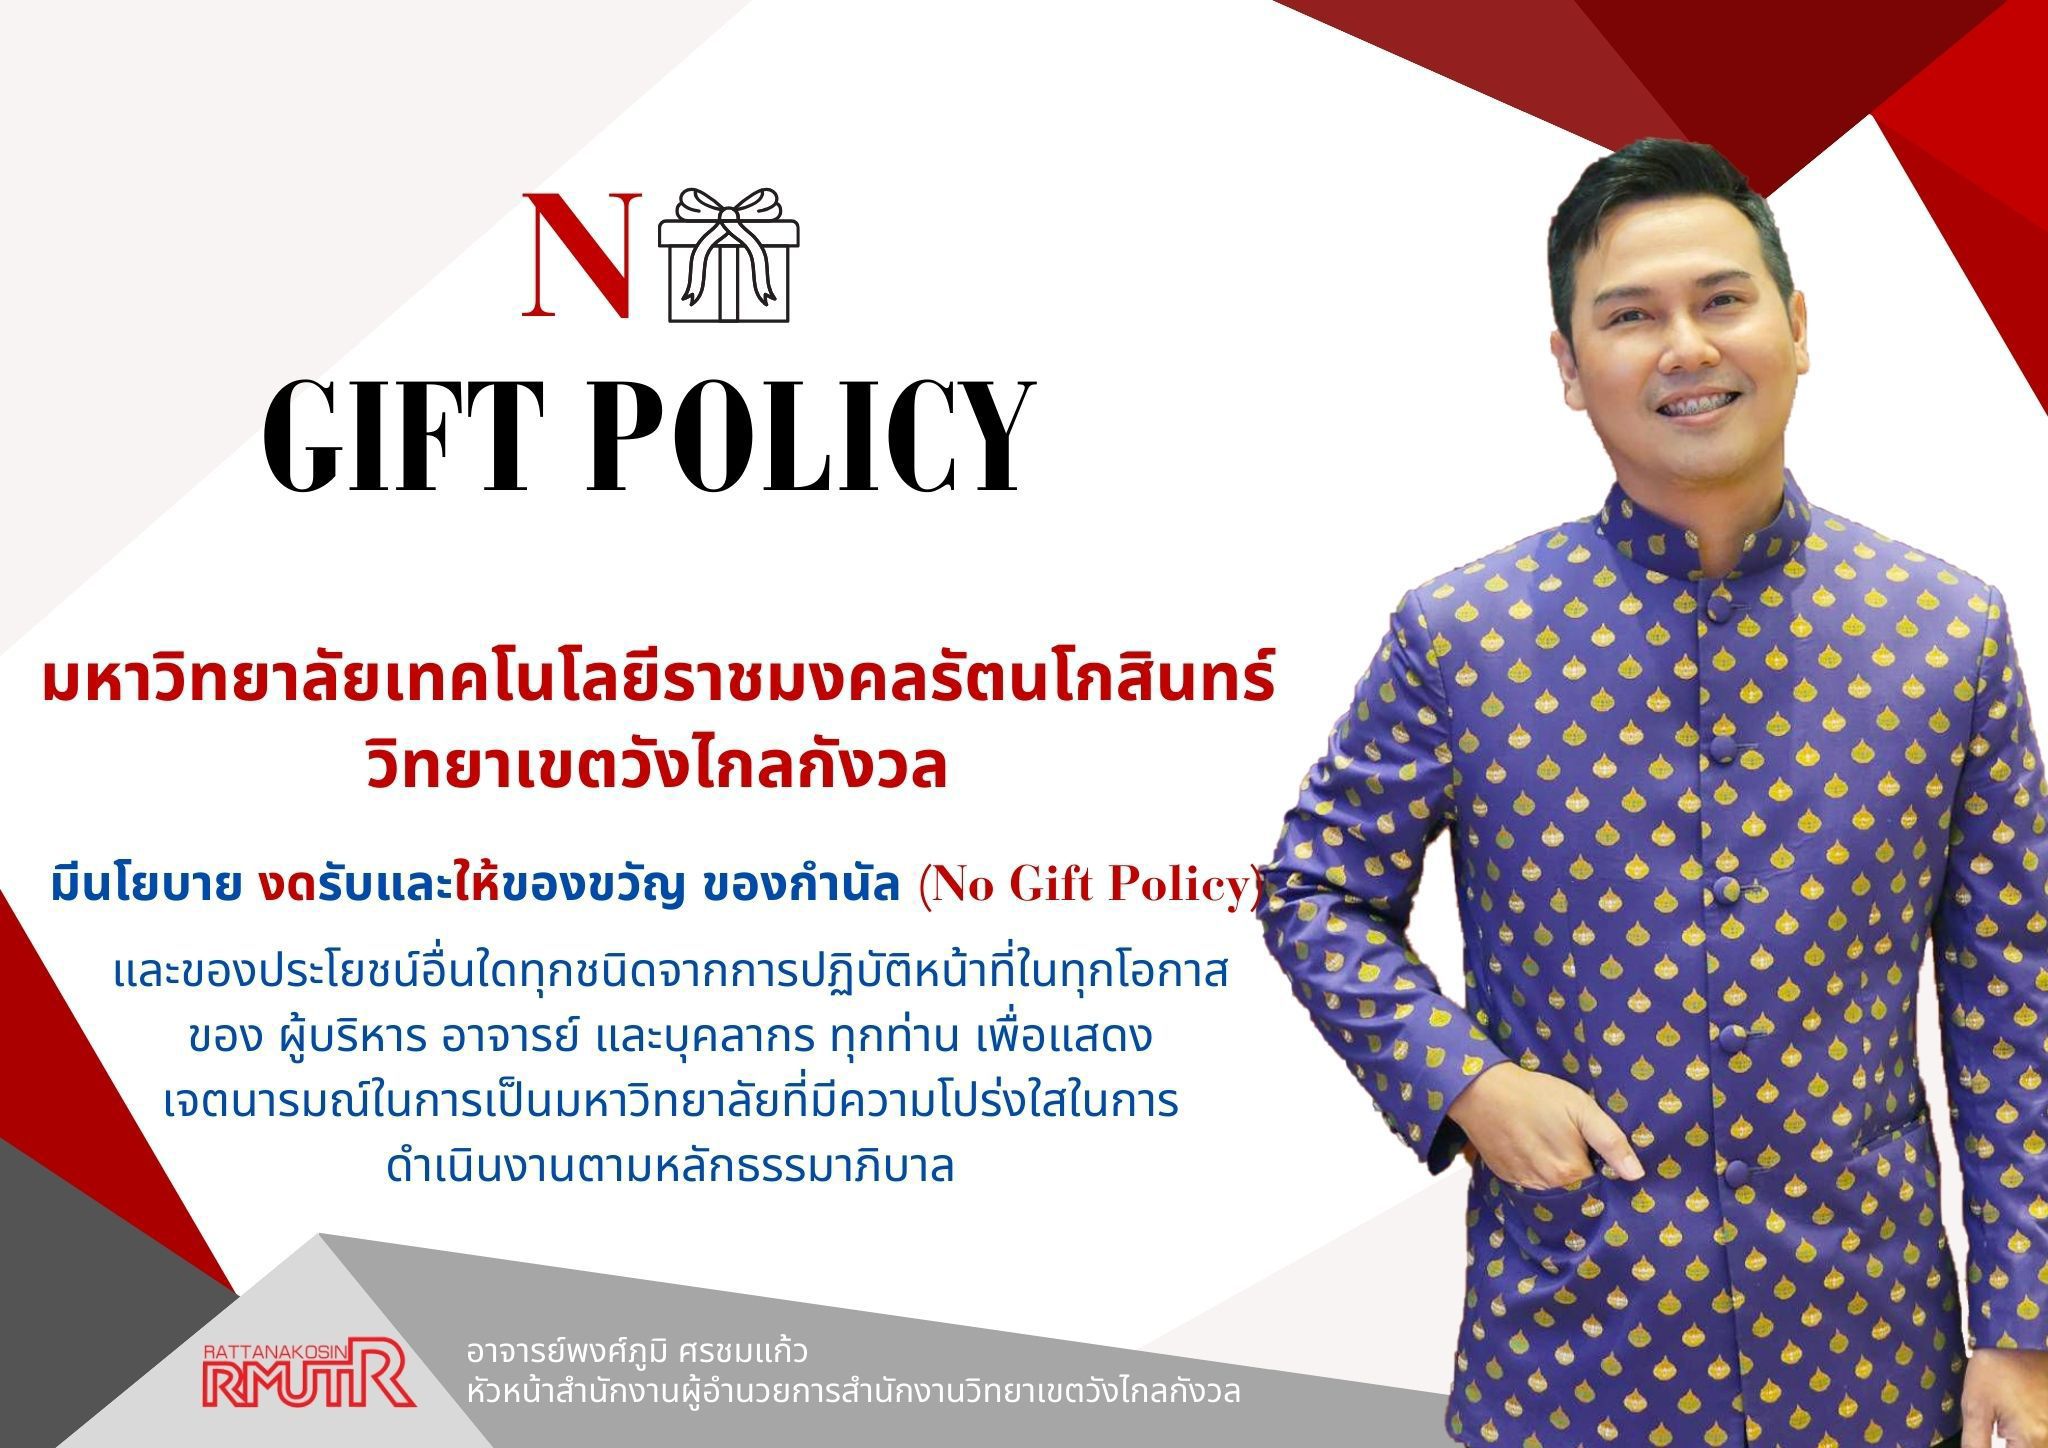 No Gift Policy 2567 (อ.พงศ์ภูมิ ศรชมแก้ว)